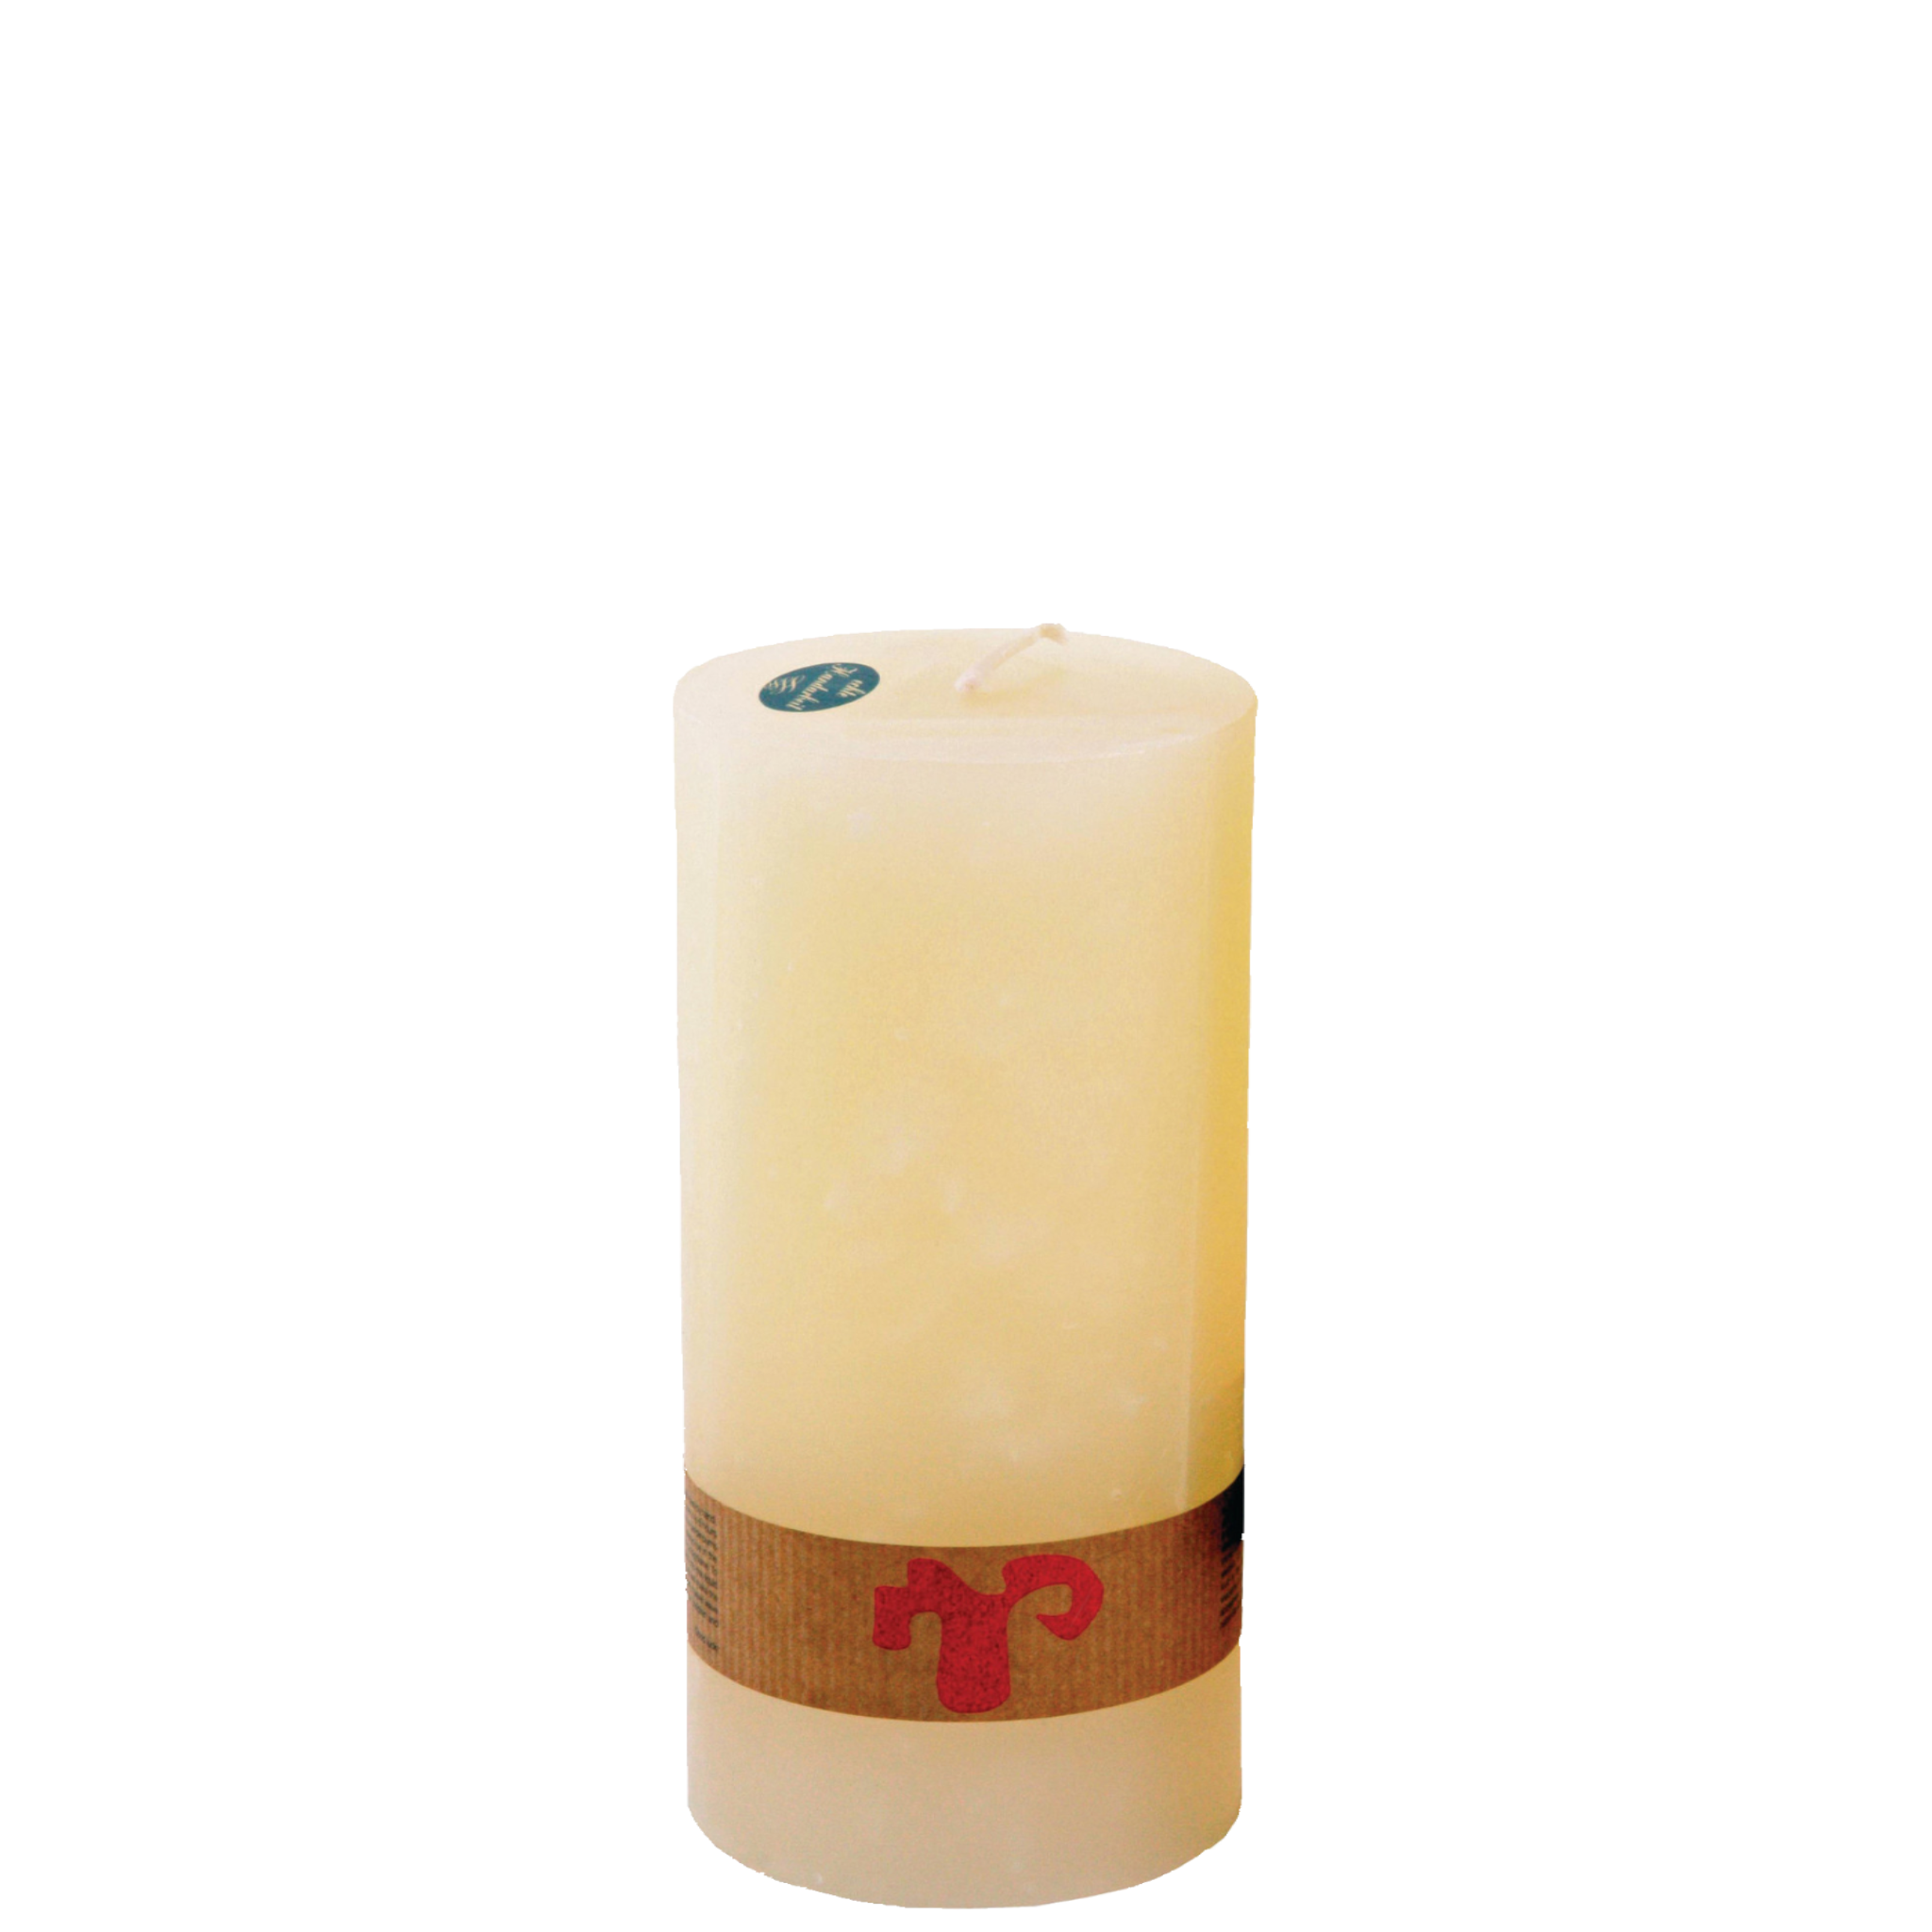 Extra Large Pillar Candles